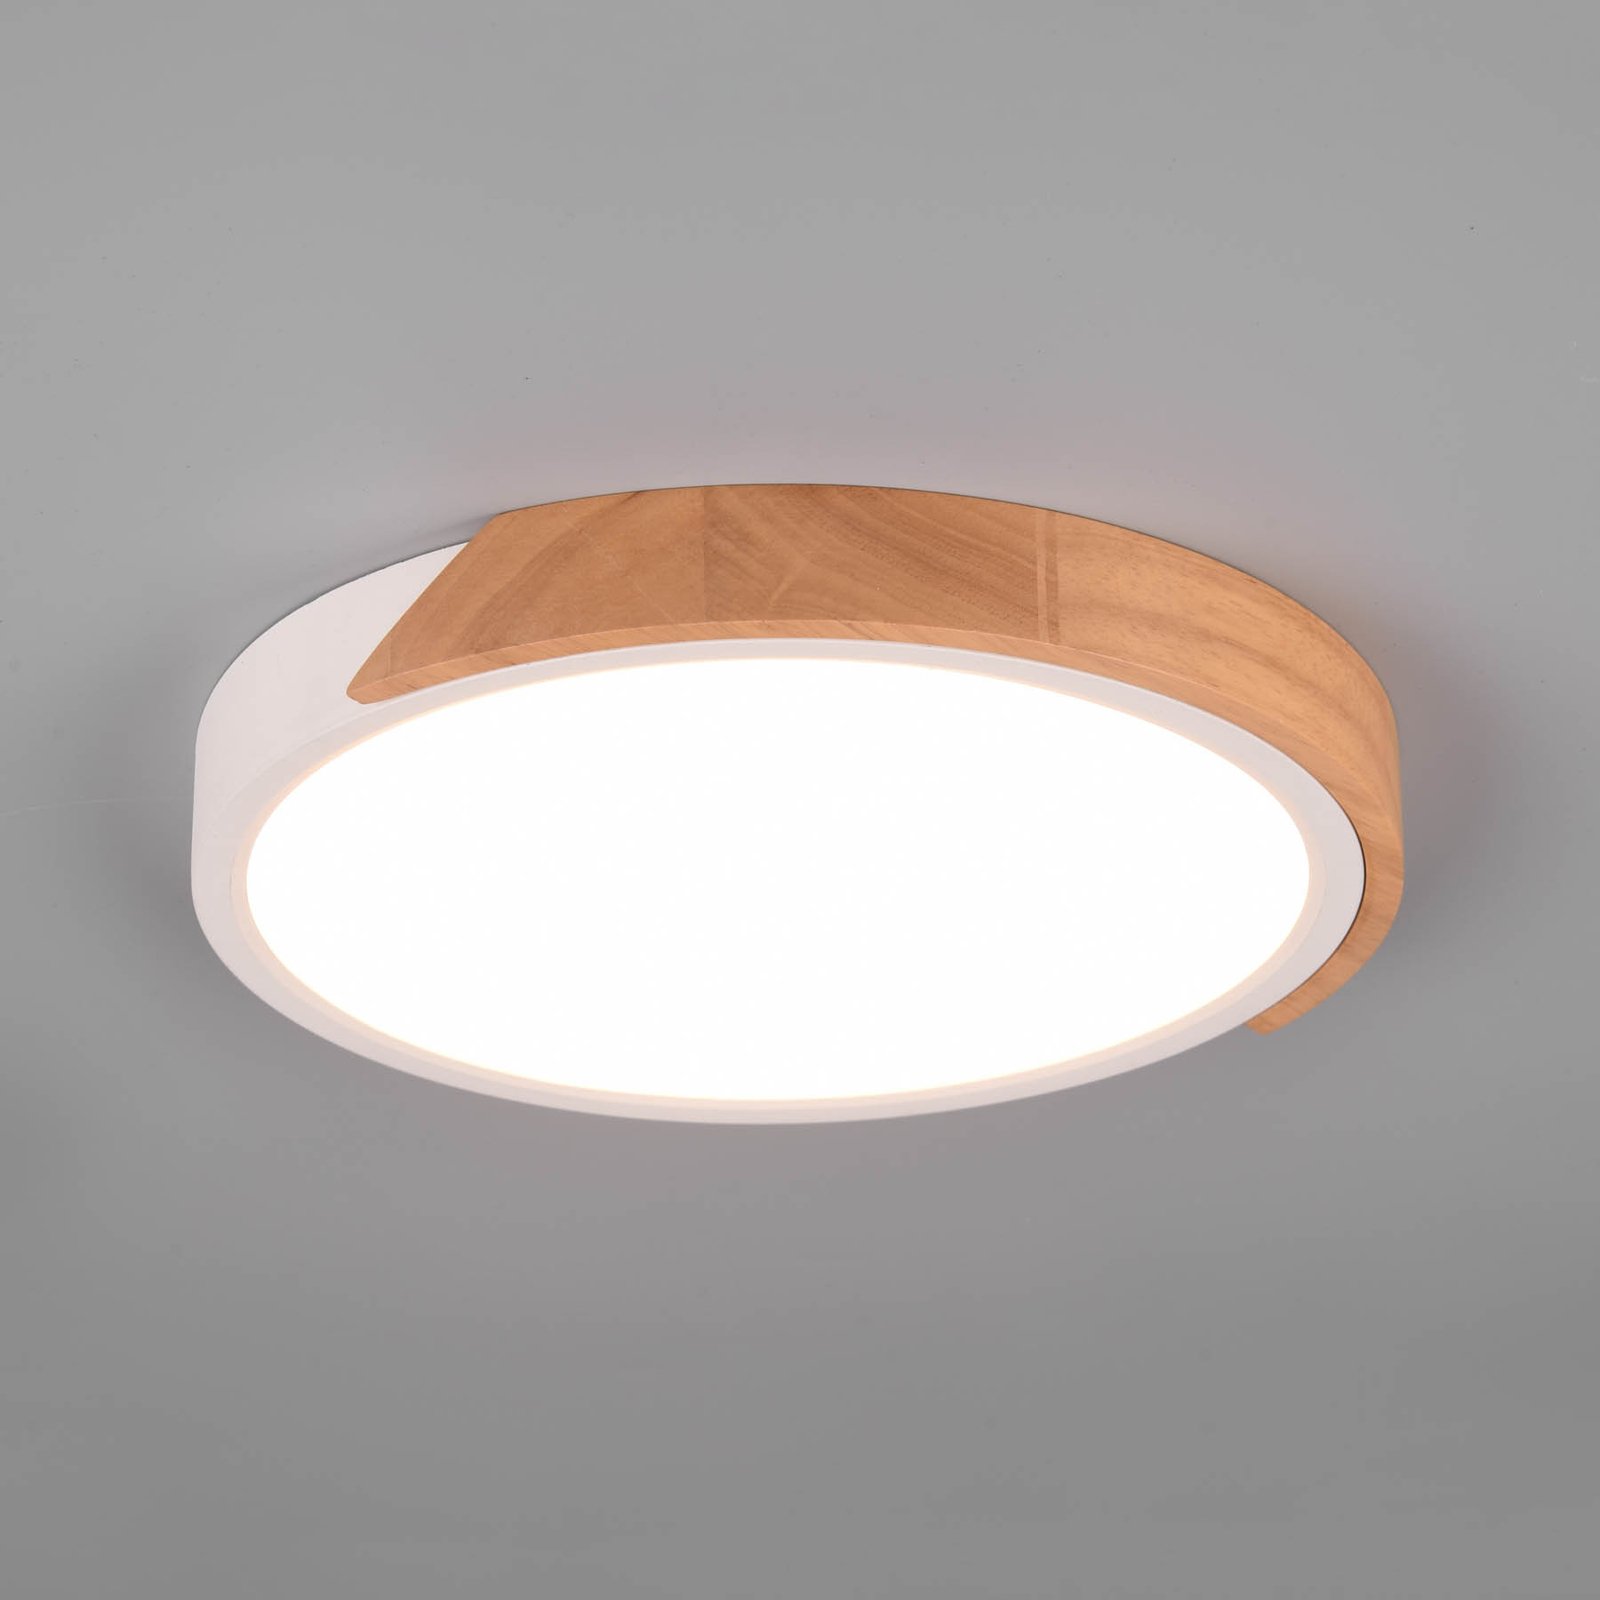 LED plafondlamp Jano, Ø 31,5 cm, 3.000K, wit